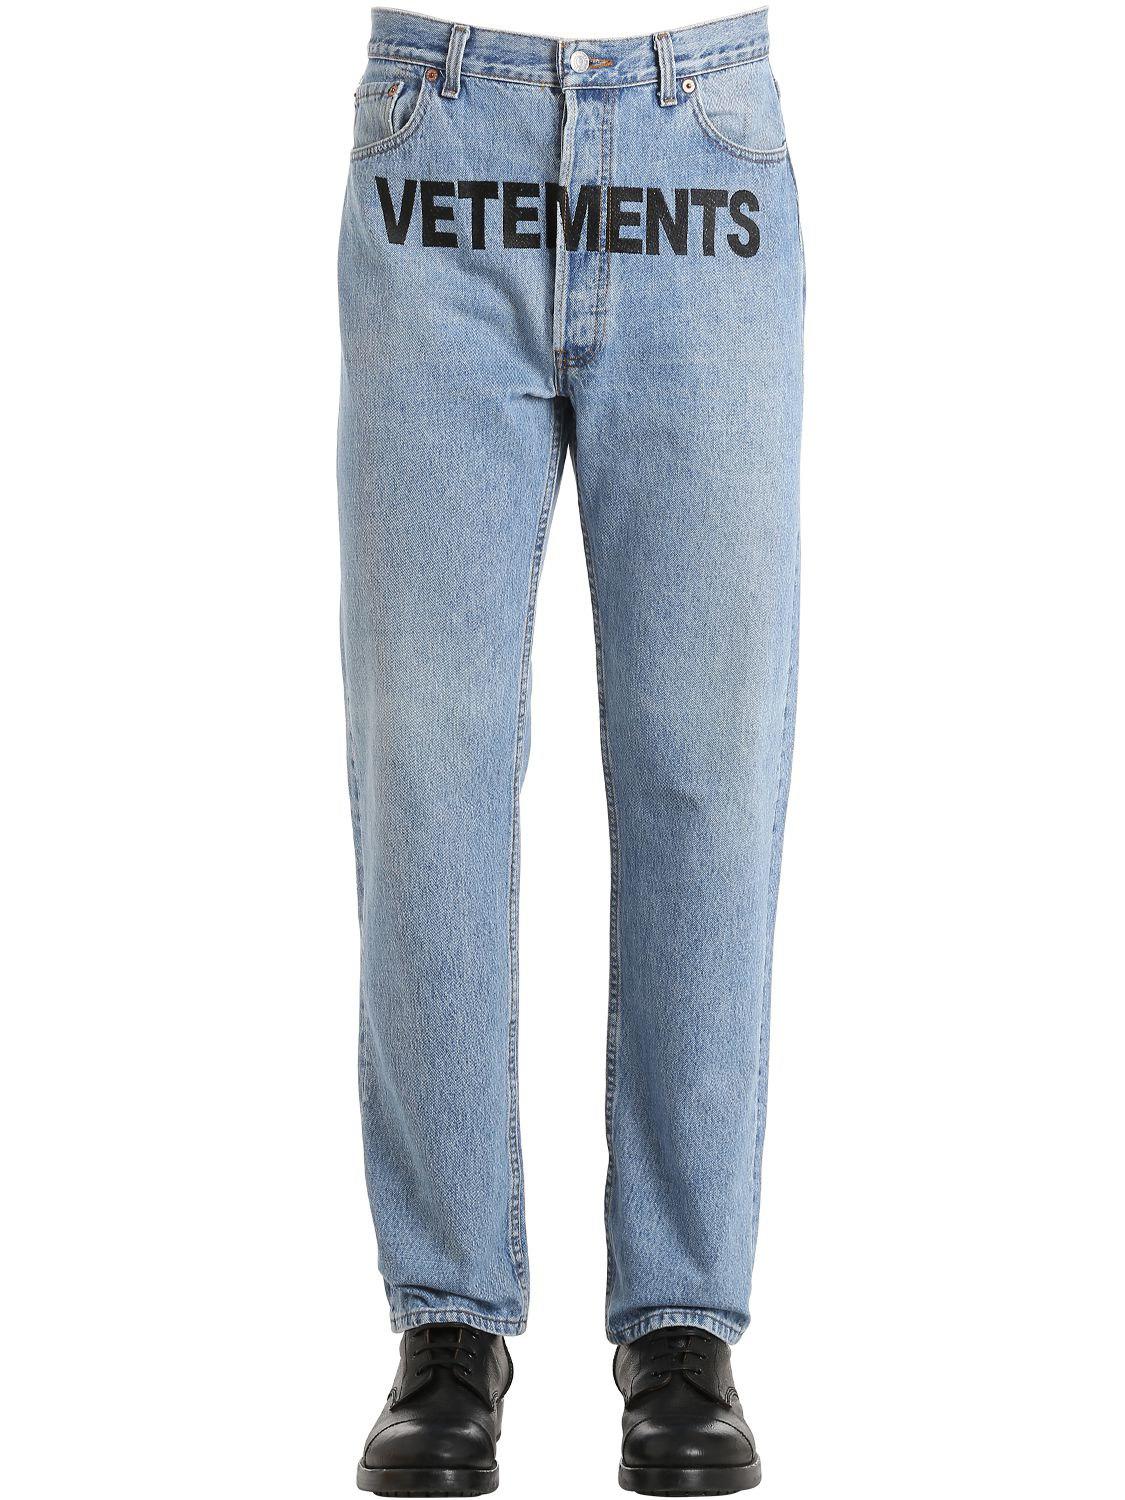 Jeans ""levi's Reworked"" De Denim Con Logo" Vetements de hombre de color  Azul | Lyst